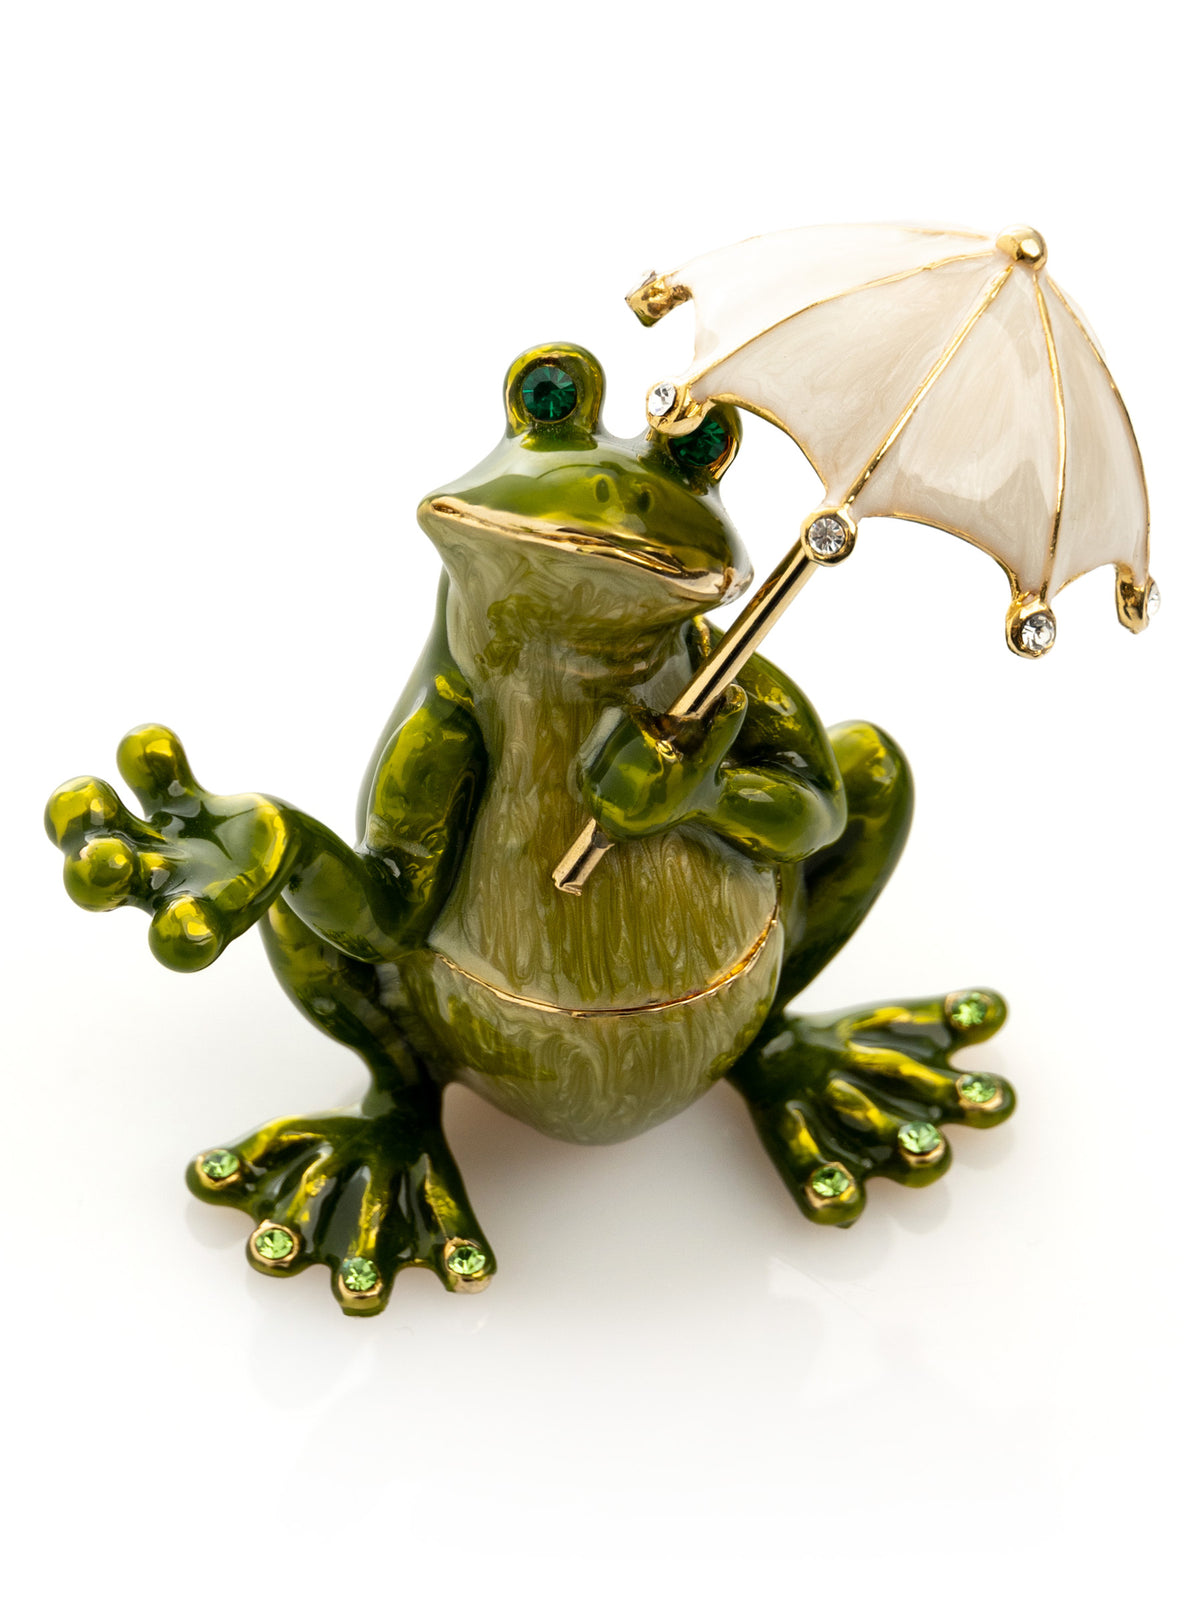 Frosch mit Regenschirm